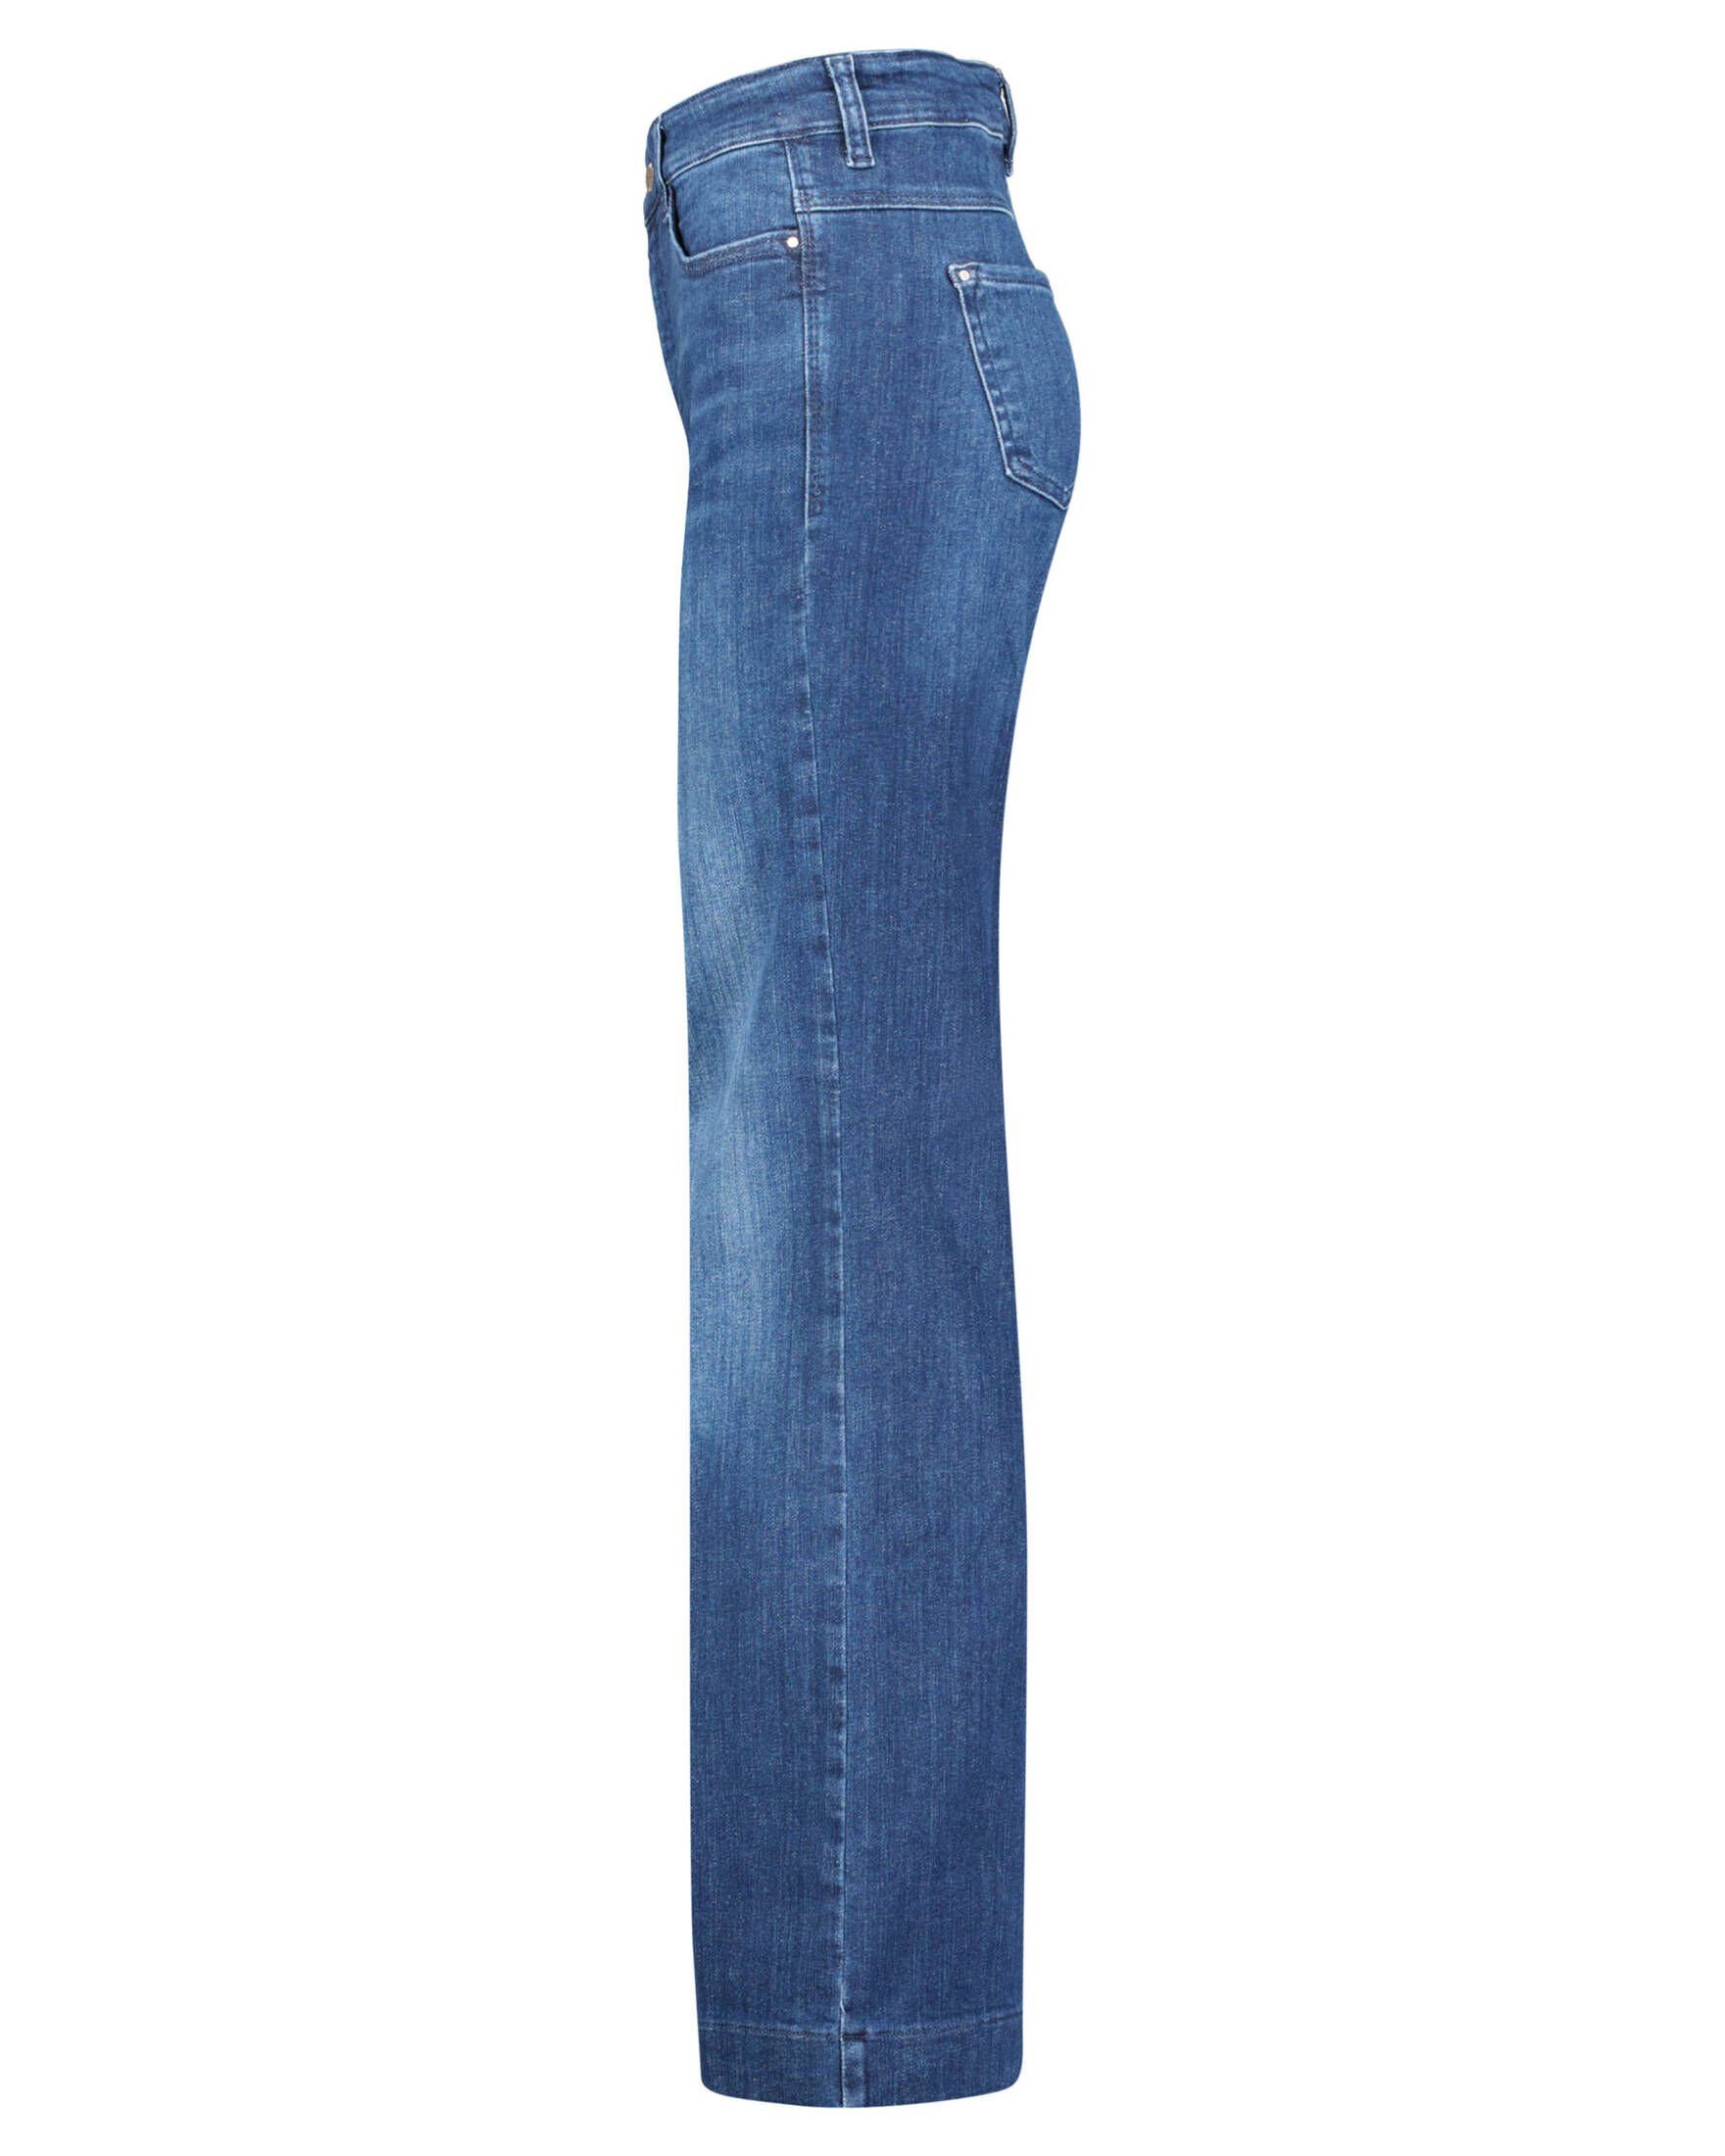 Jeans authentic Dream entsprechend Wide formendem MAC Shaping-Effekt, Passform: mit Weite dem fällt normal Schnitt aus